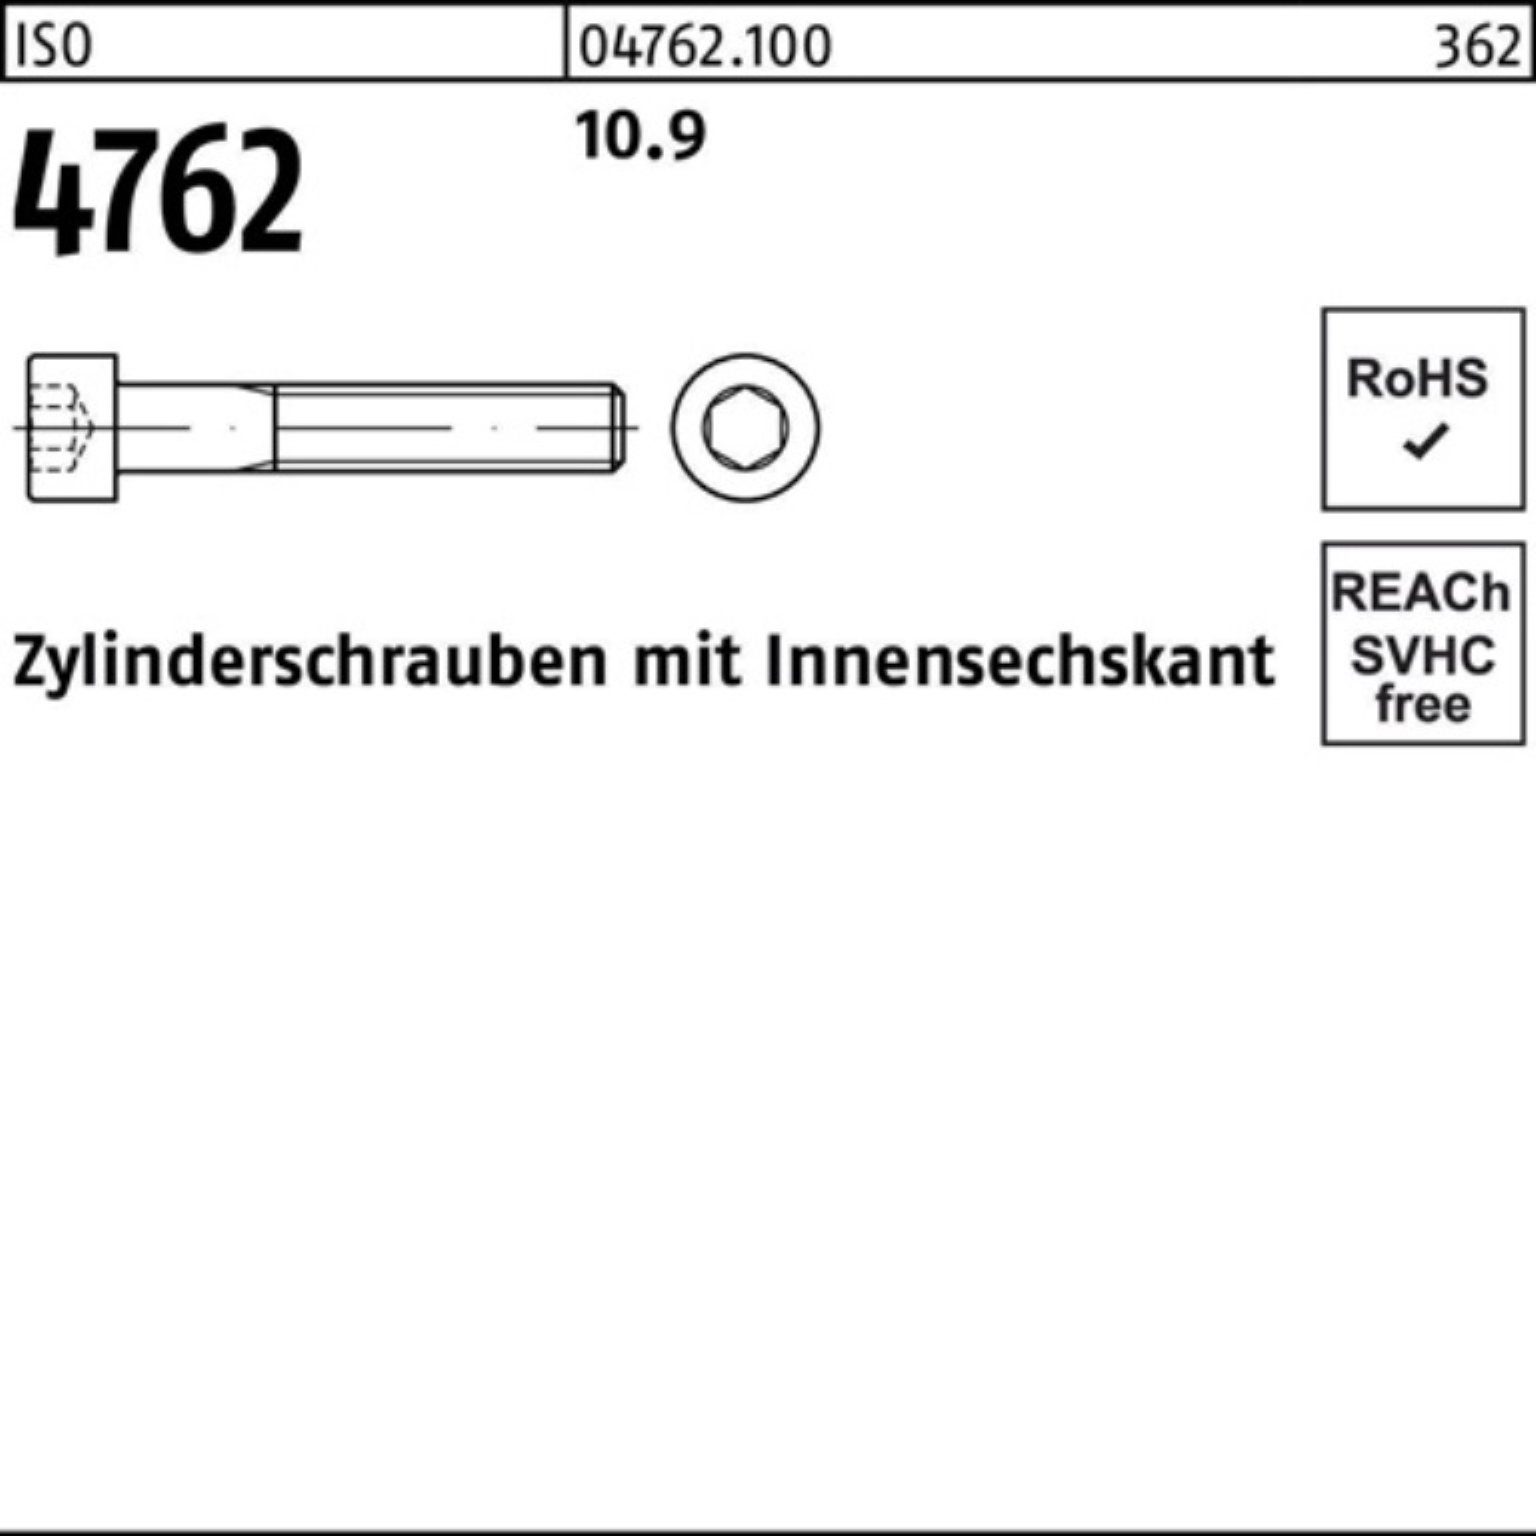 Zylinderschraube Stück Pack 160 10.9 Reyher Innen-6kt 100er M42x 1 Zylinderschraube 4762 ISO